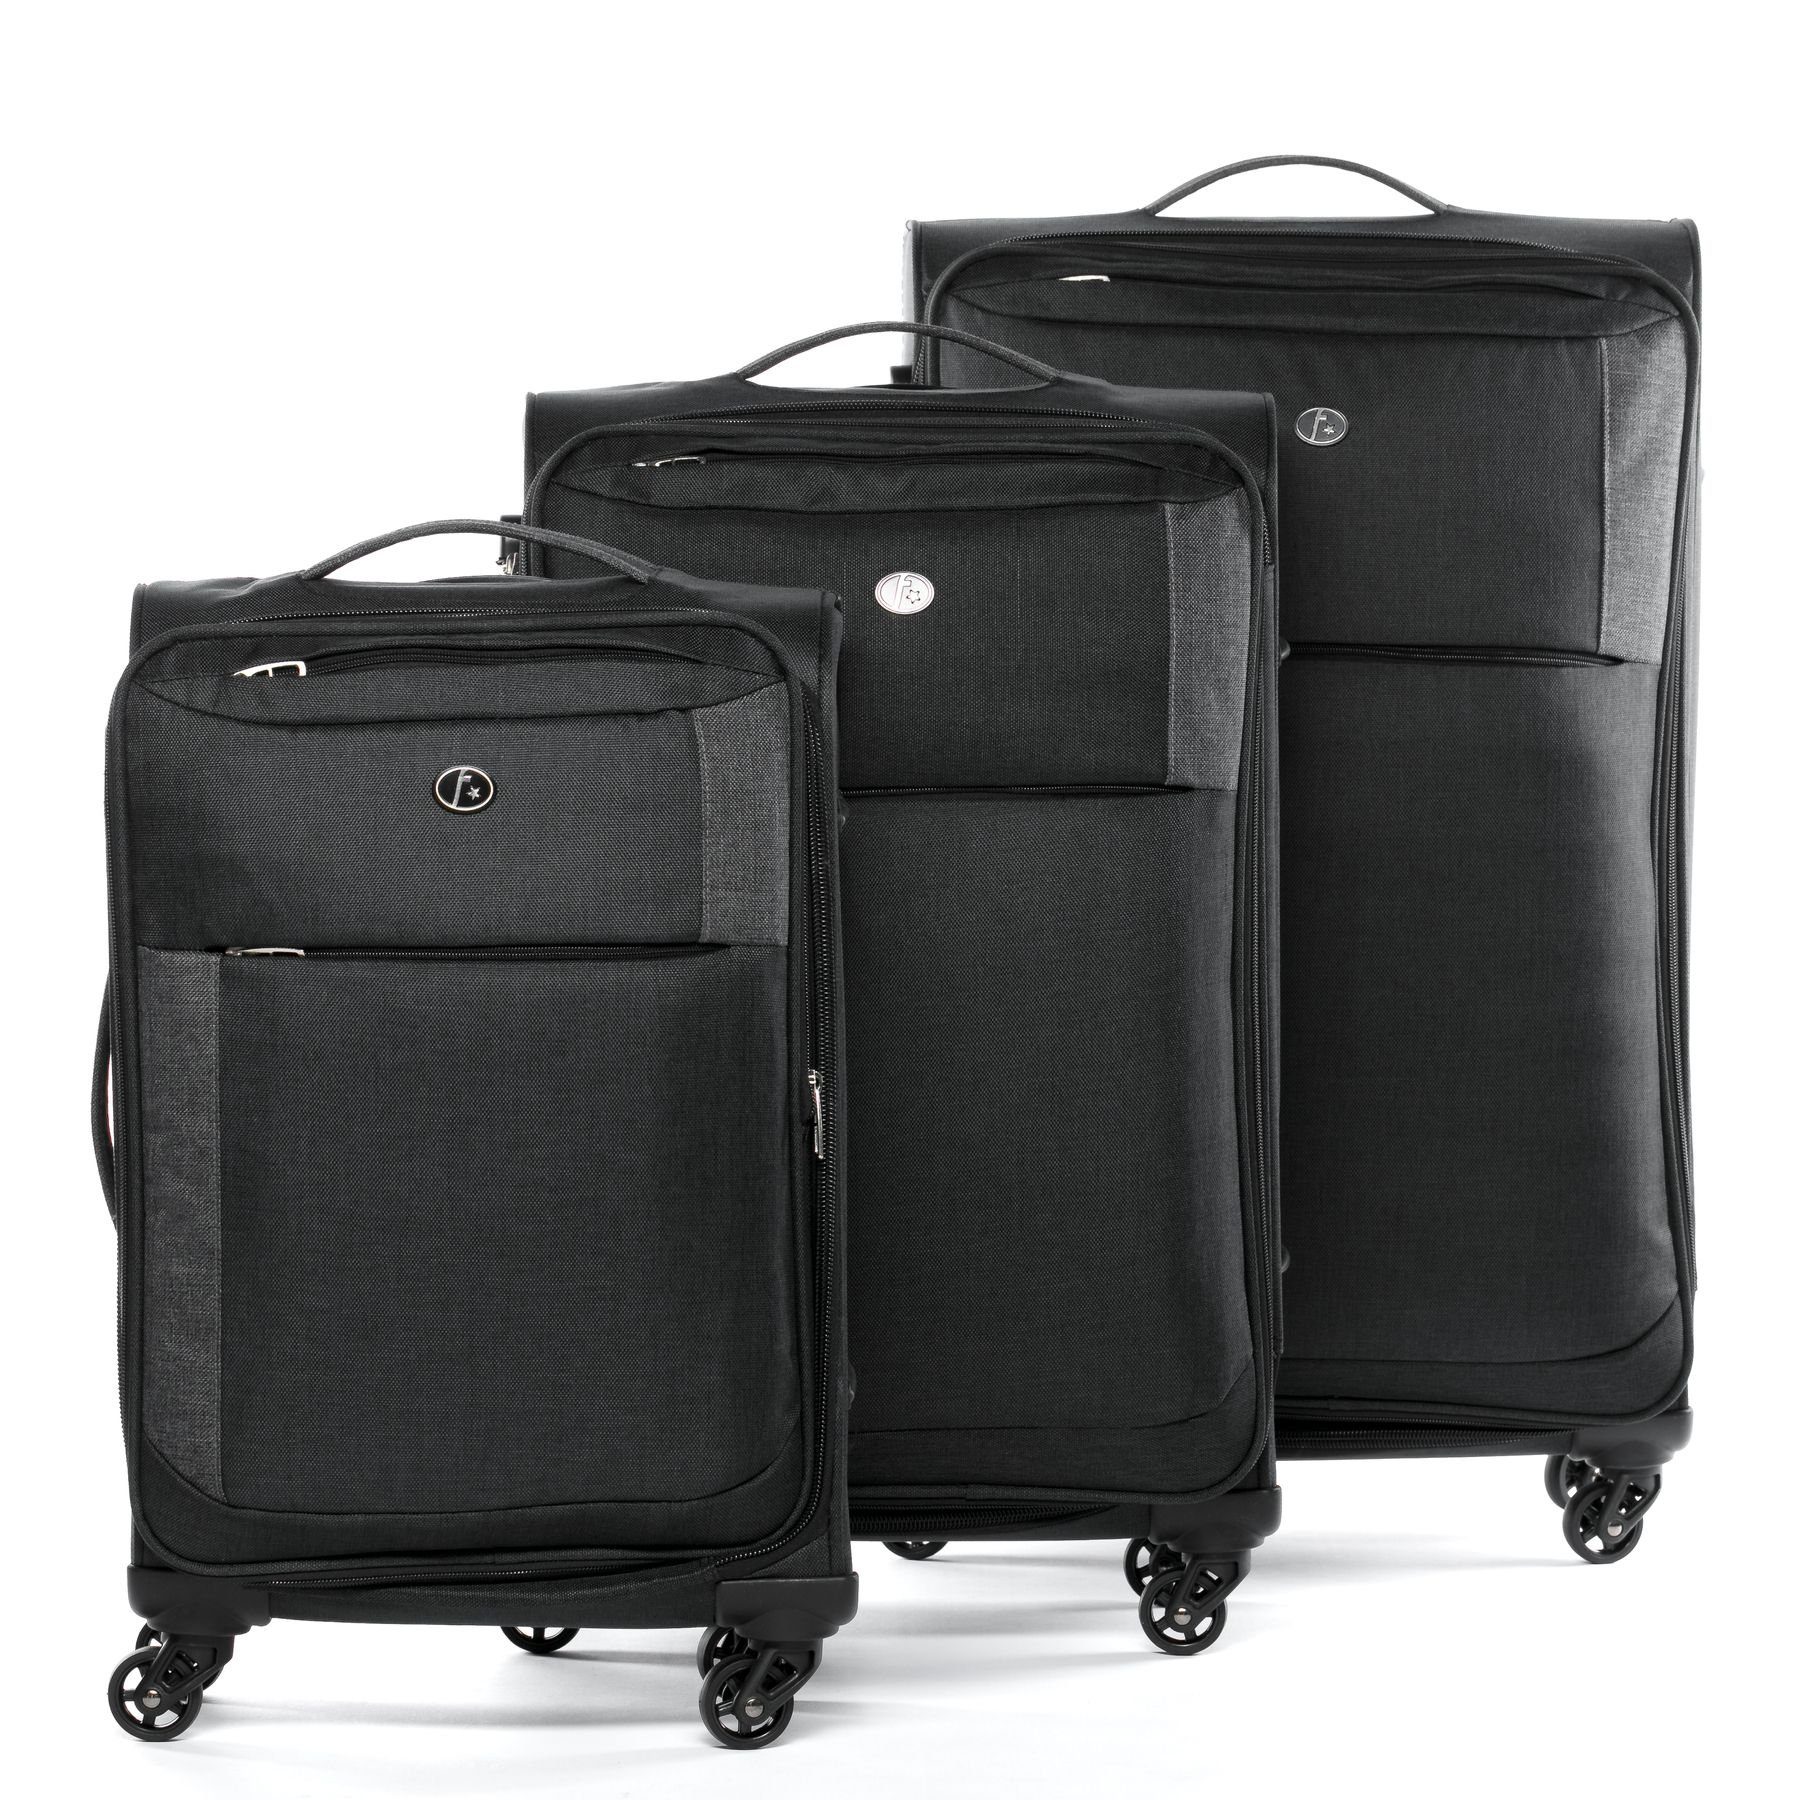 4 3er teilig Koffer Kofferset Rollkoffer Reisekoffer Saint-Tropez, Premium Set, 3 FERGÉ Trolley Weichschale erweiterbar Rollen,